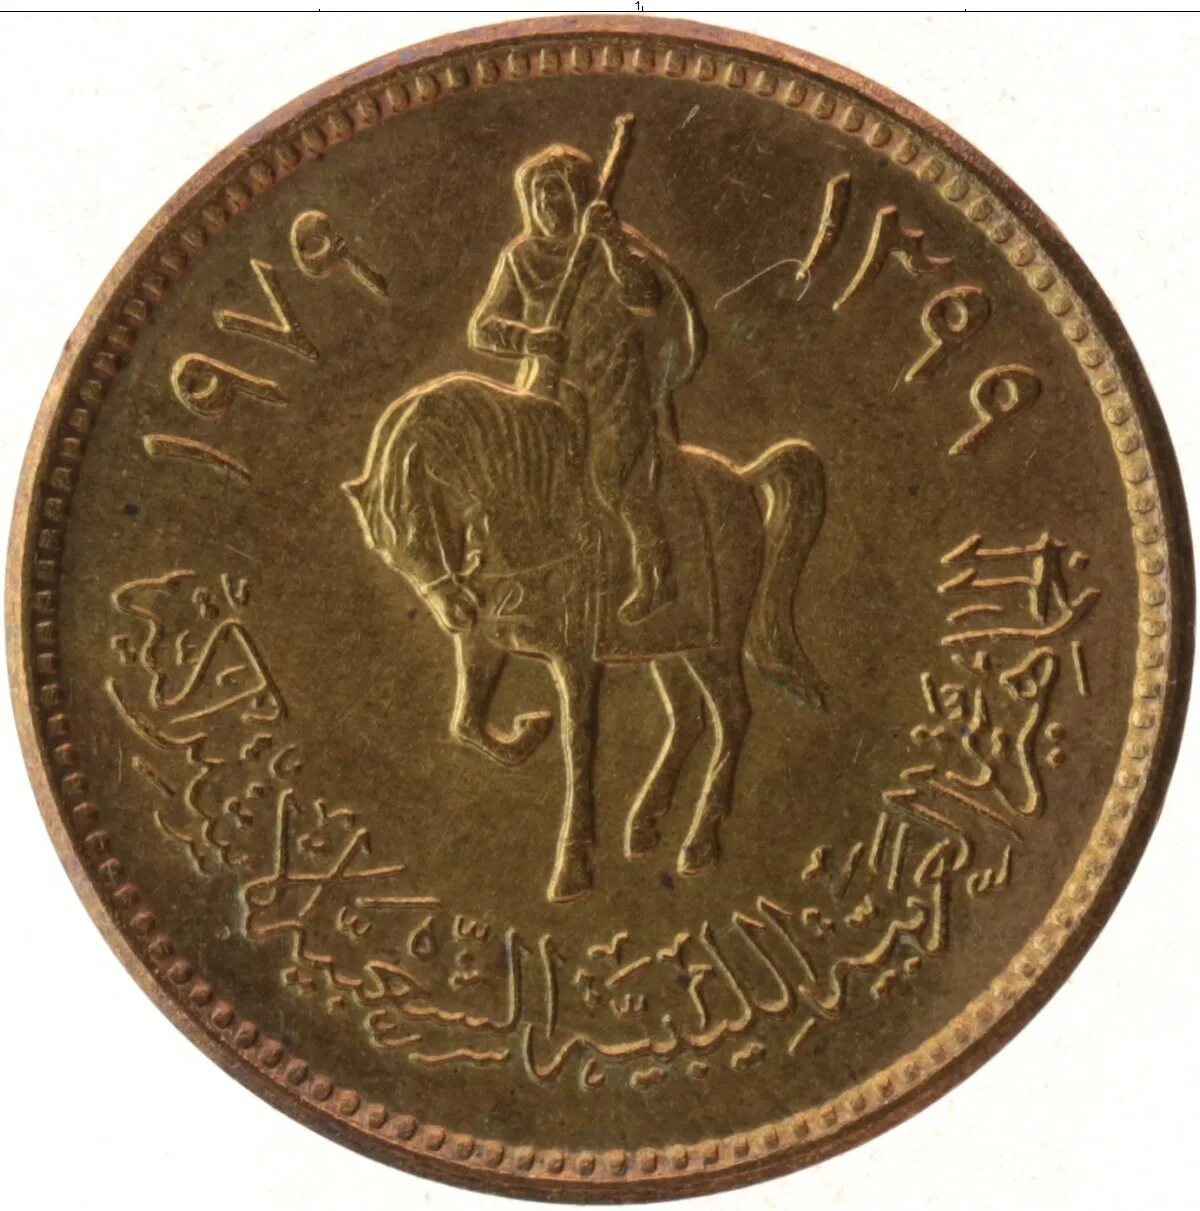 Монета 20 дирхам 1979 Ливия. Монеты Ливия. Libya монеты. 50 Дирхам монета. День дирхам